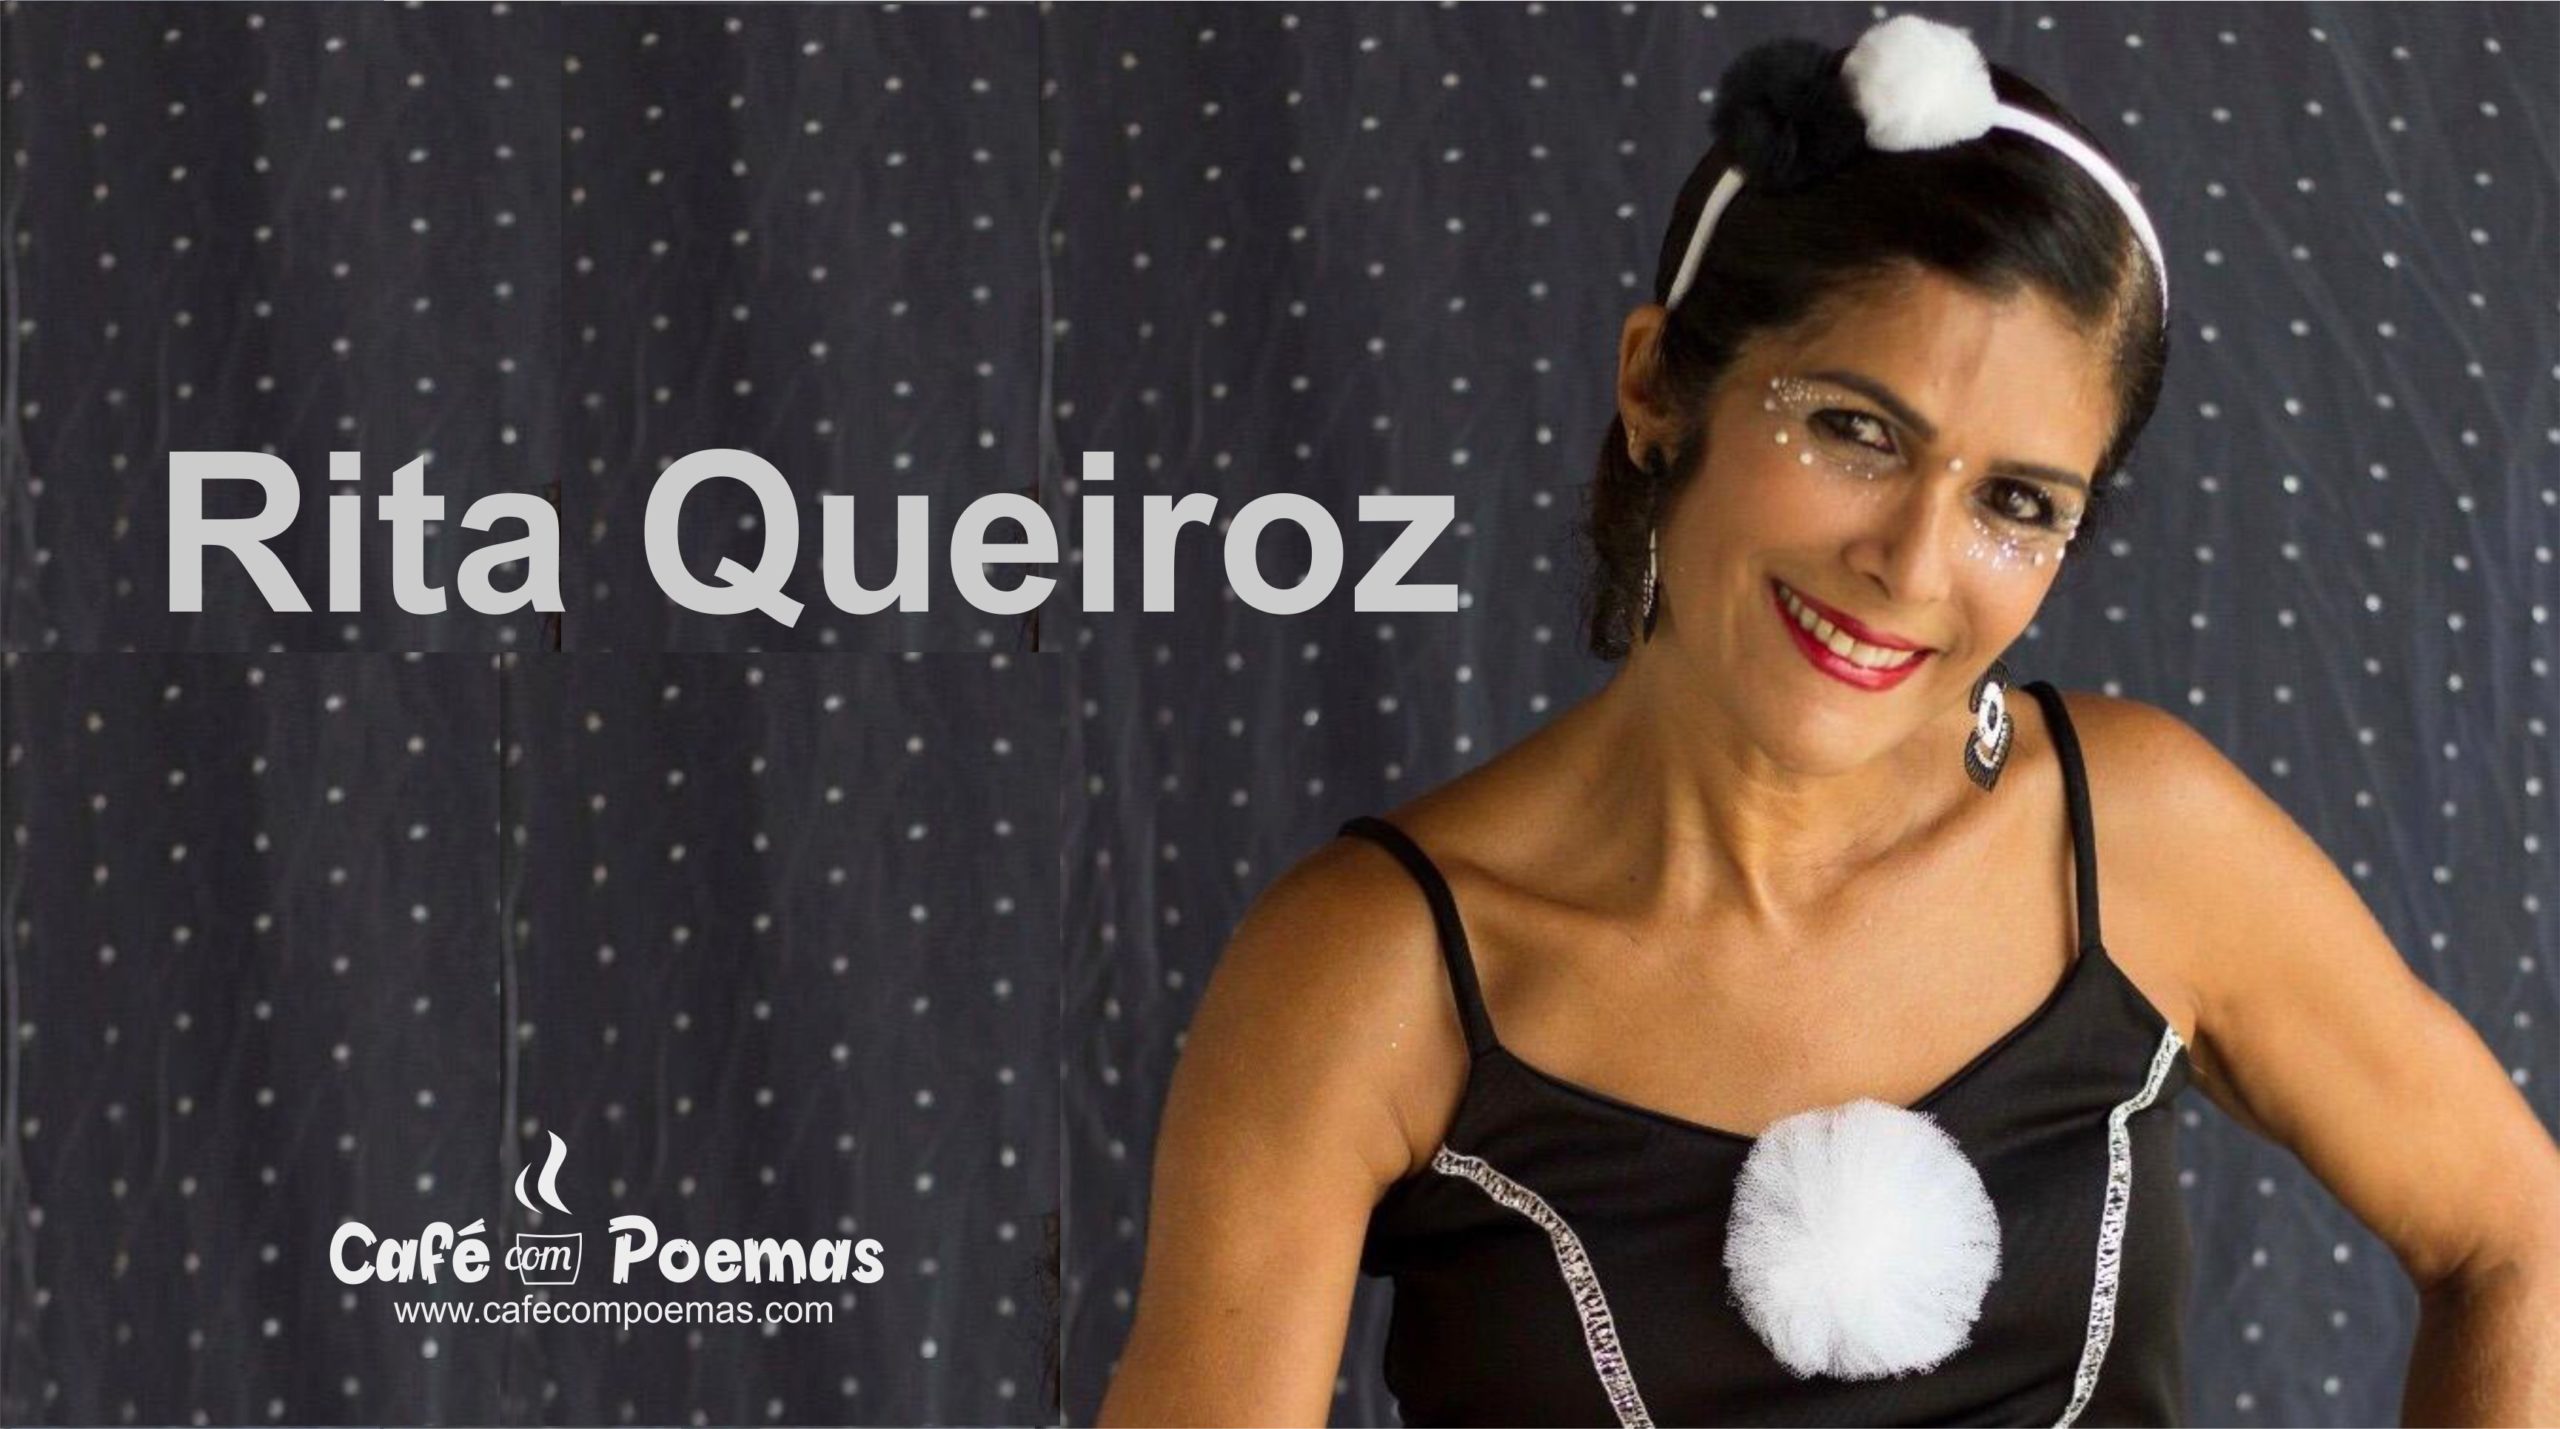 Rita Queiroz café com poemas salvador biografia